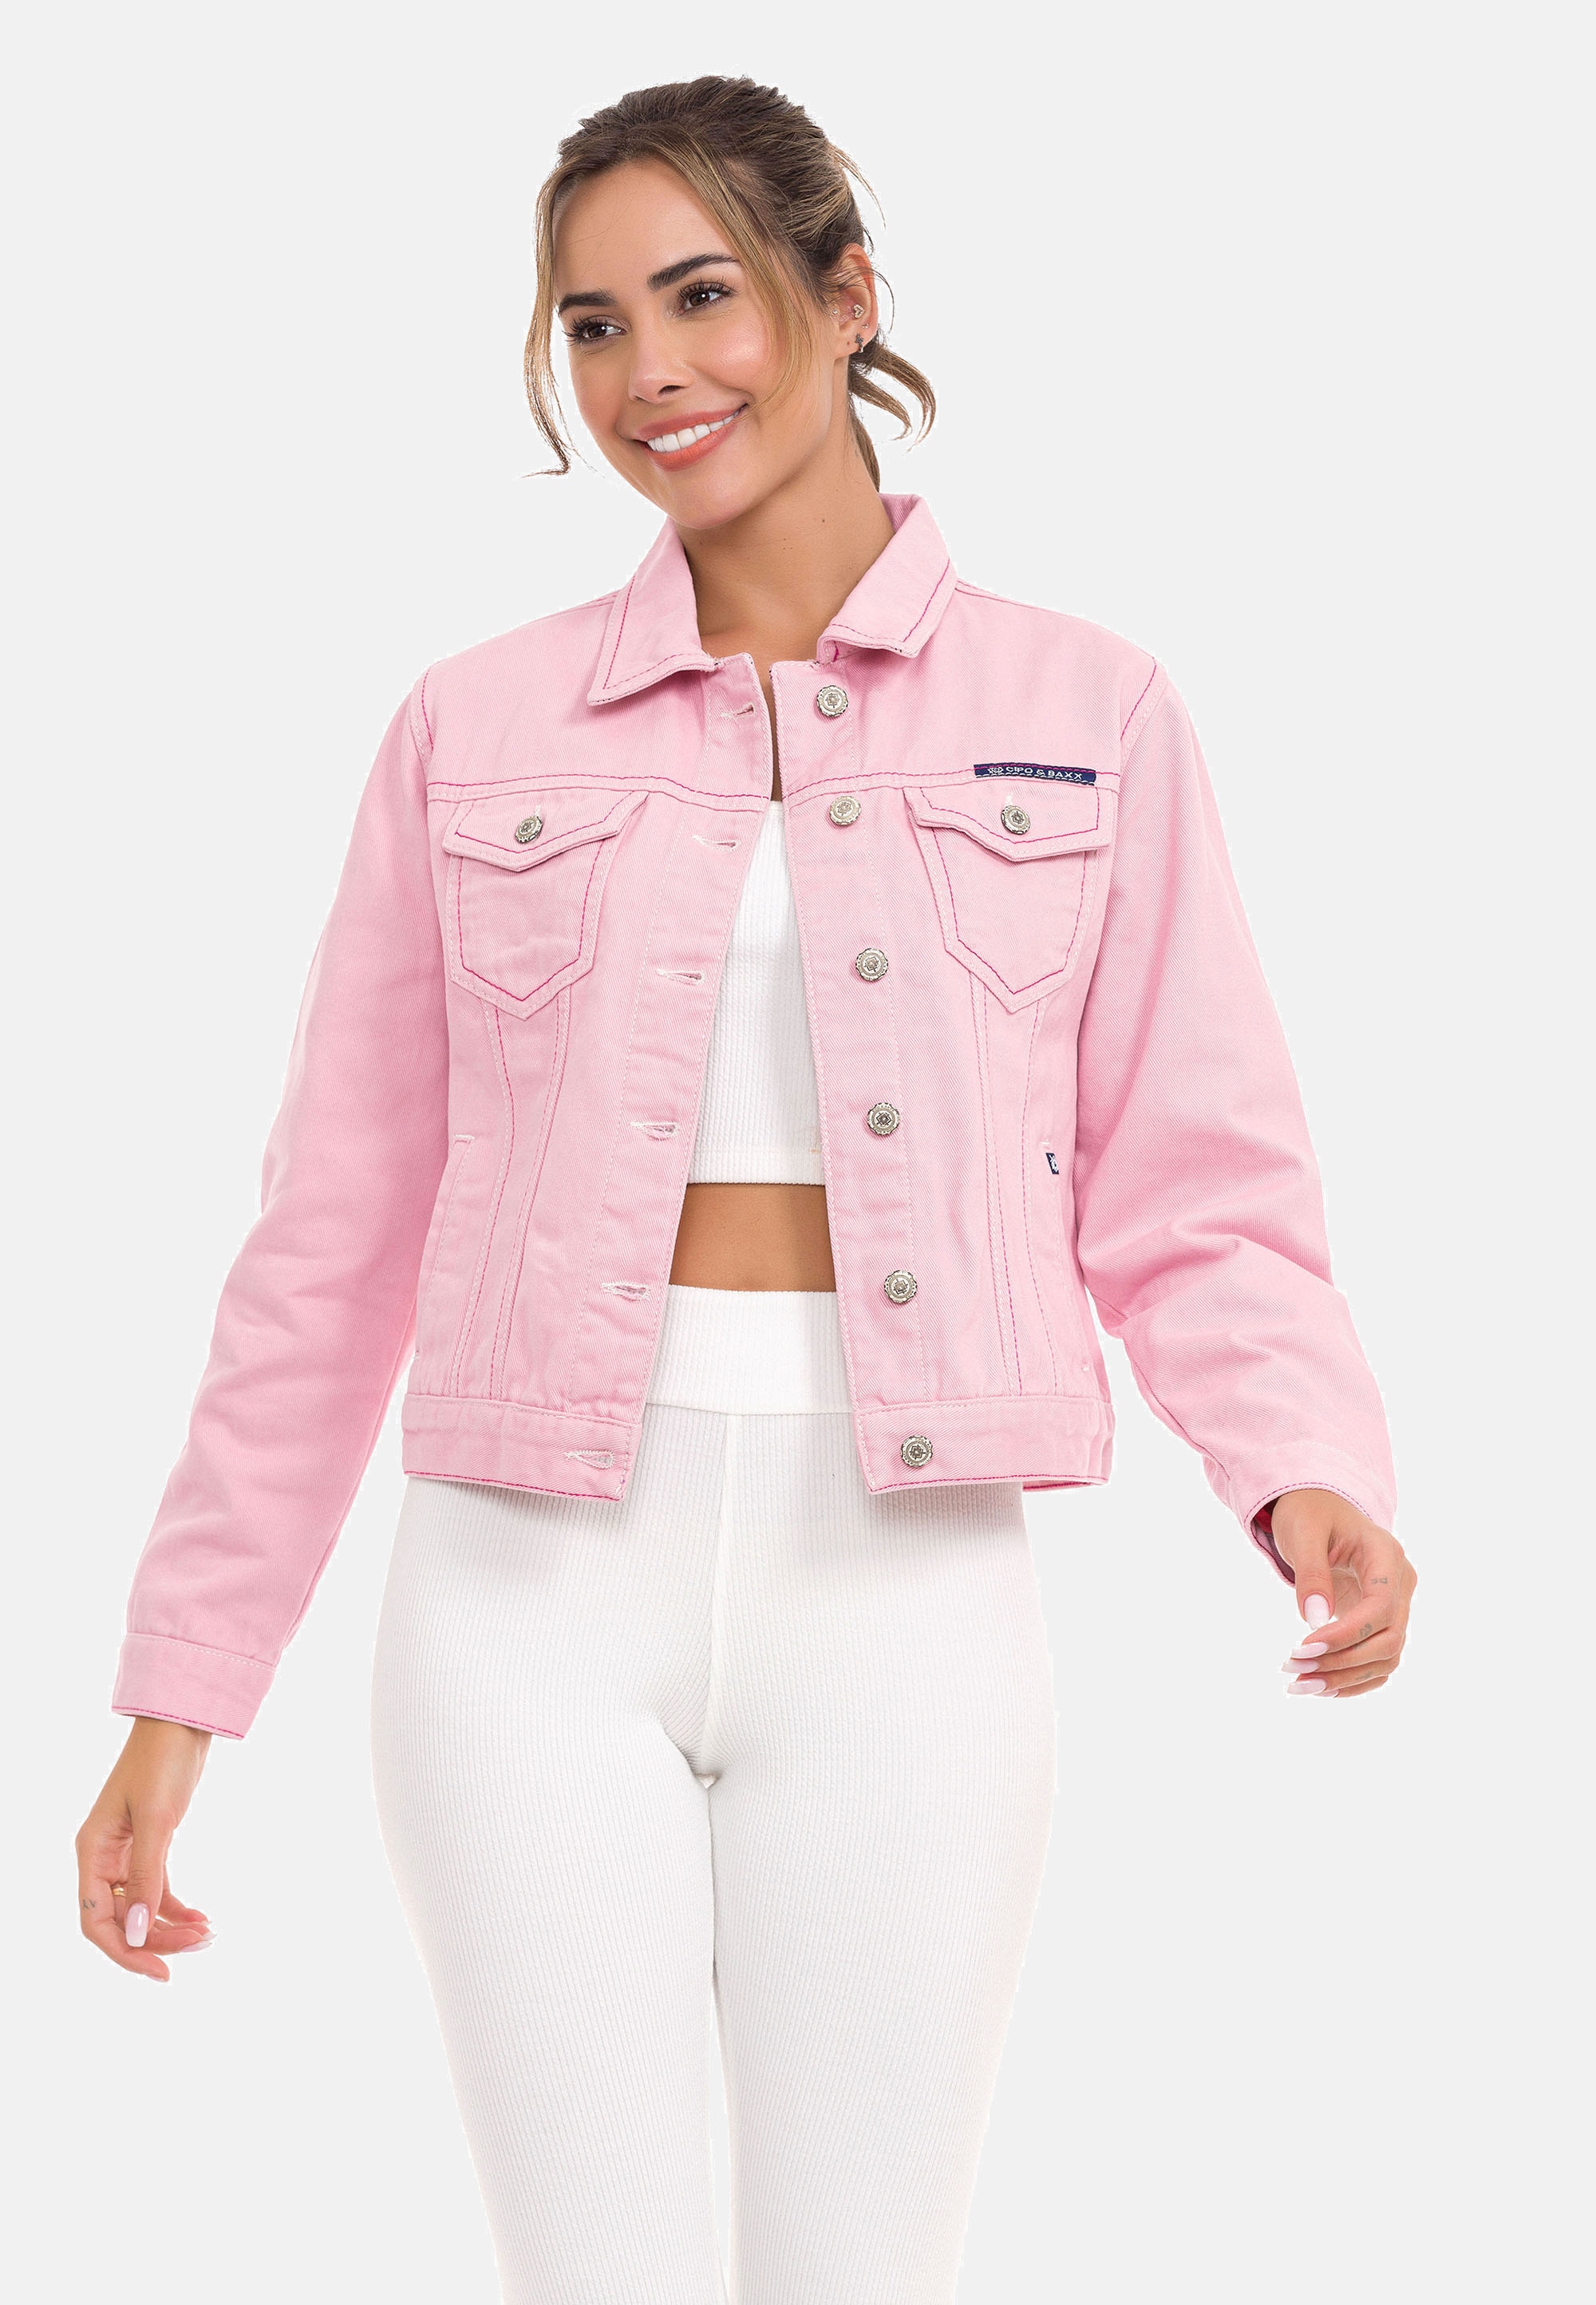 Jacken rosa online kaufen » I\'m walking